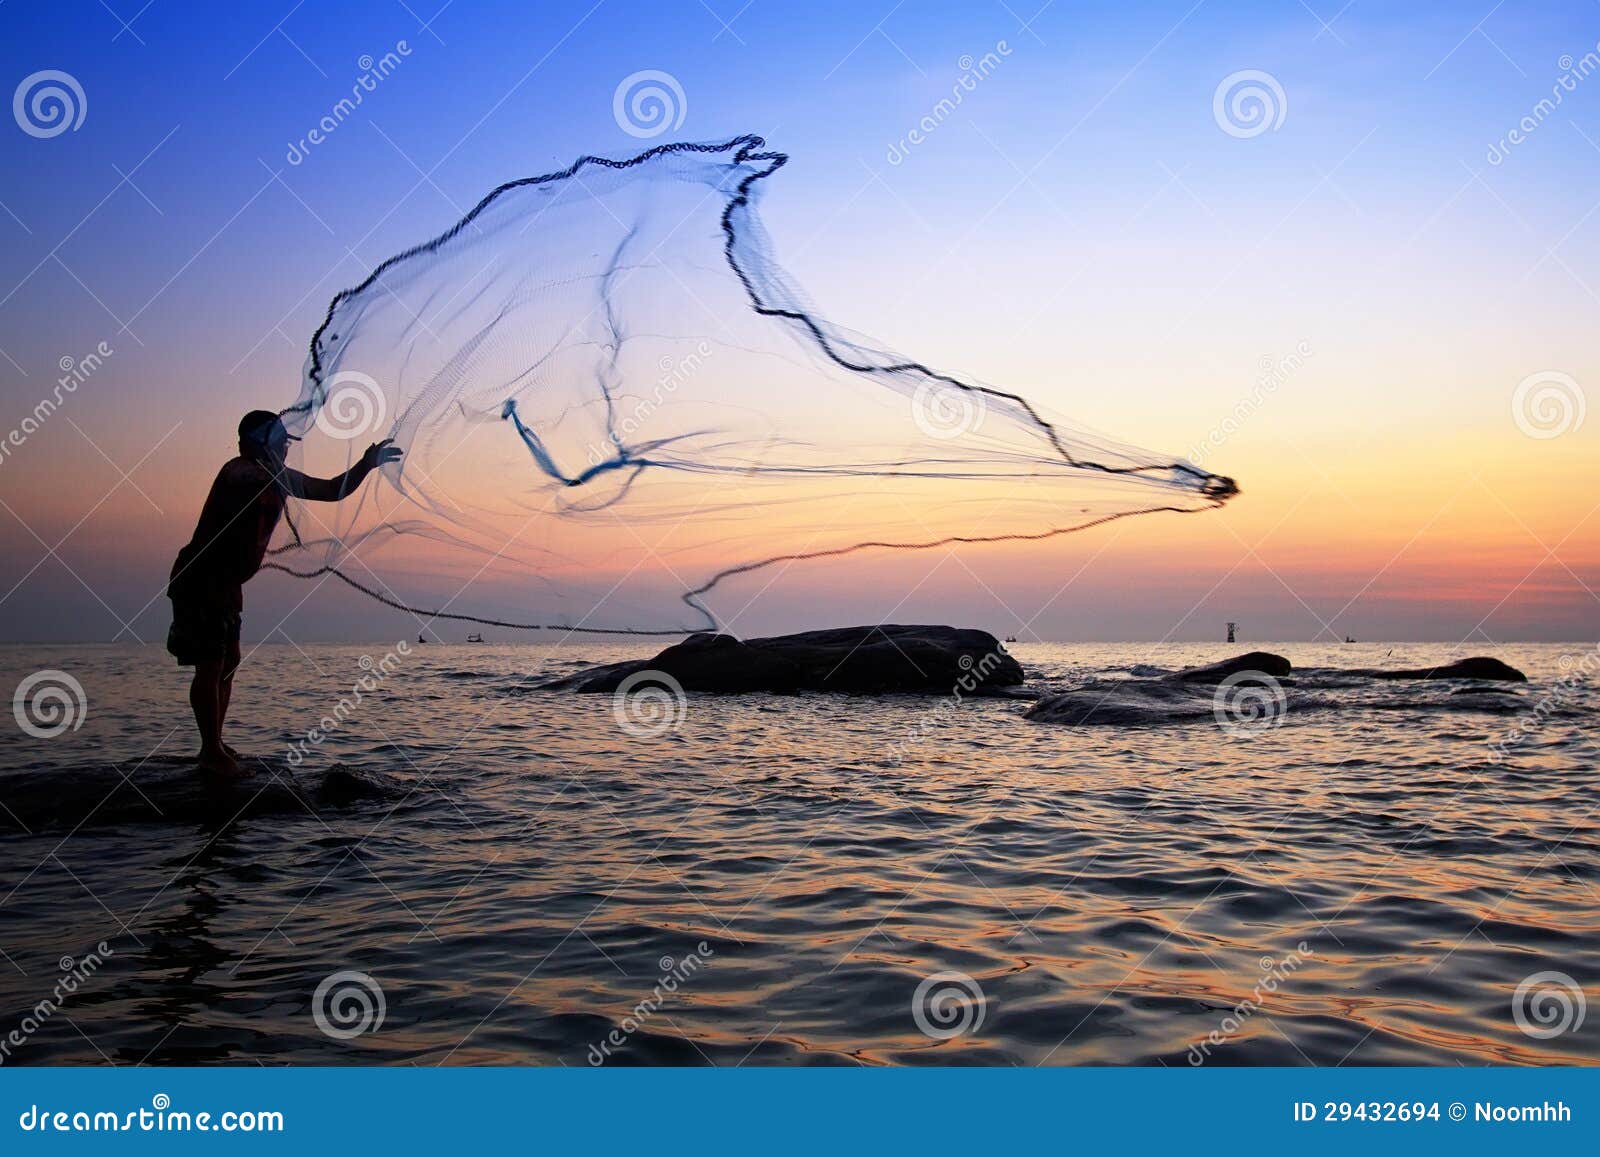 Throwing fishing net stock photo. Image of lake, orange - 29432694